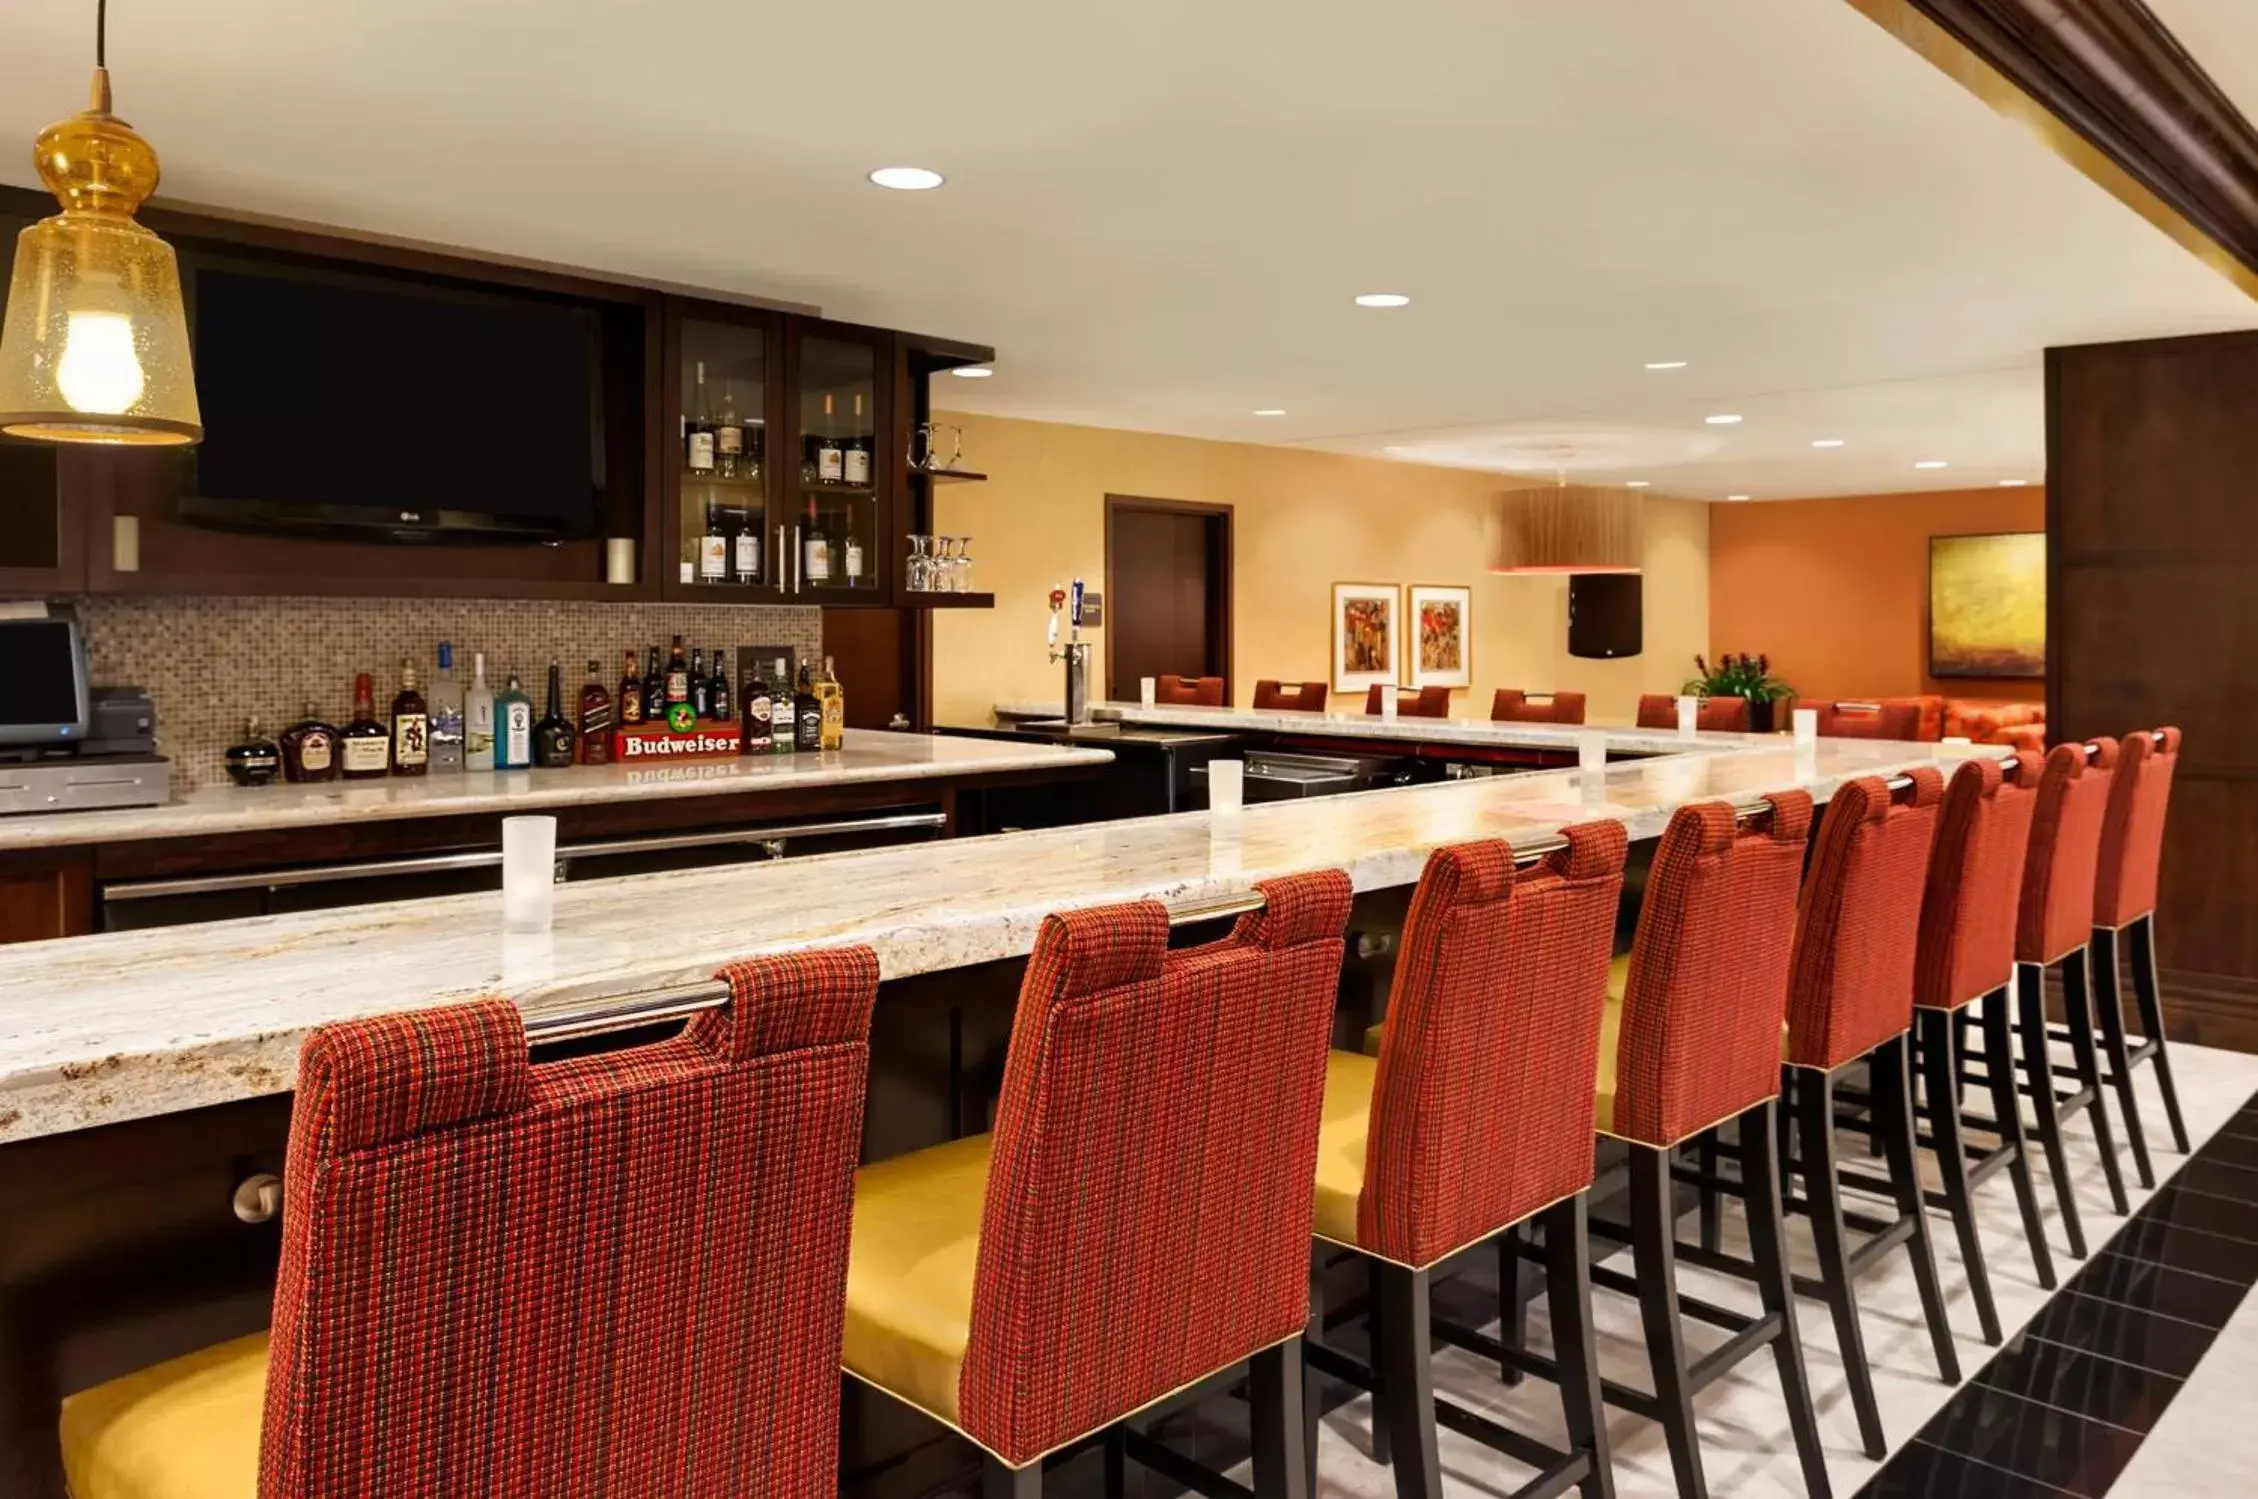 Restaurant/places to eat, Lounge/Bar in Hilton Garden Inn Shreveport Bossier City